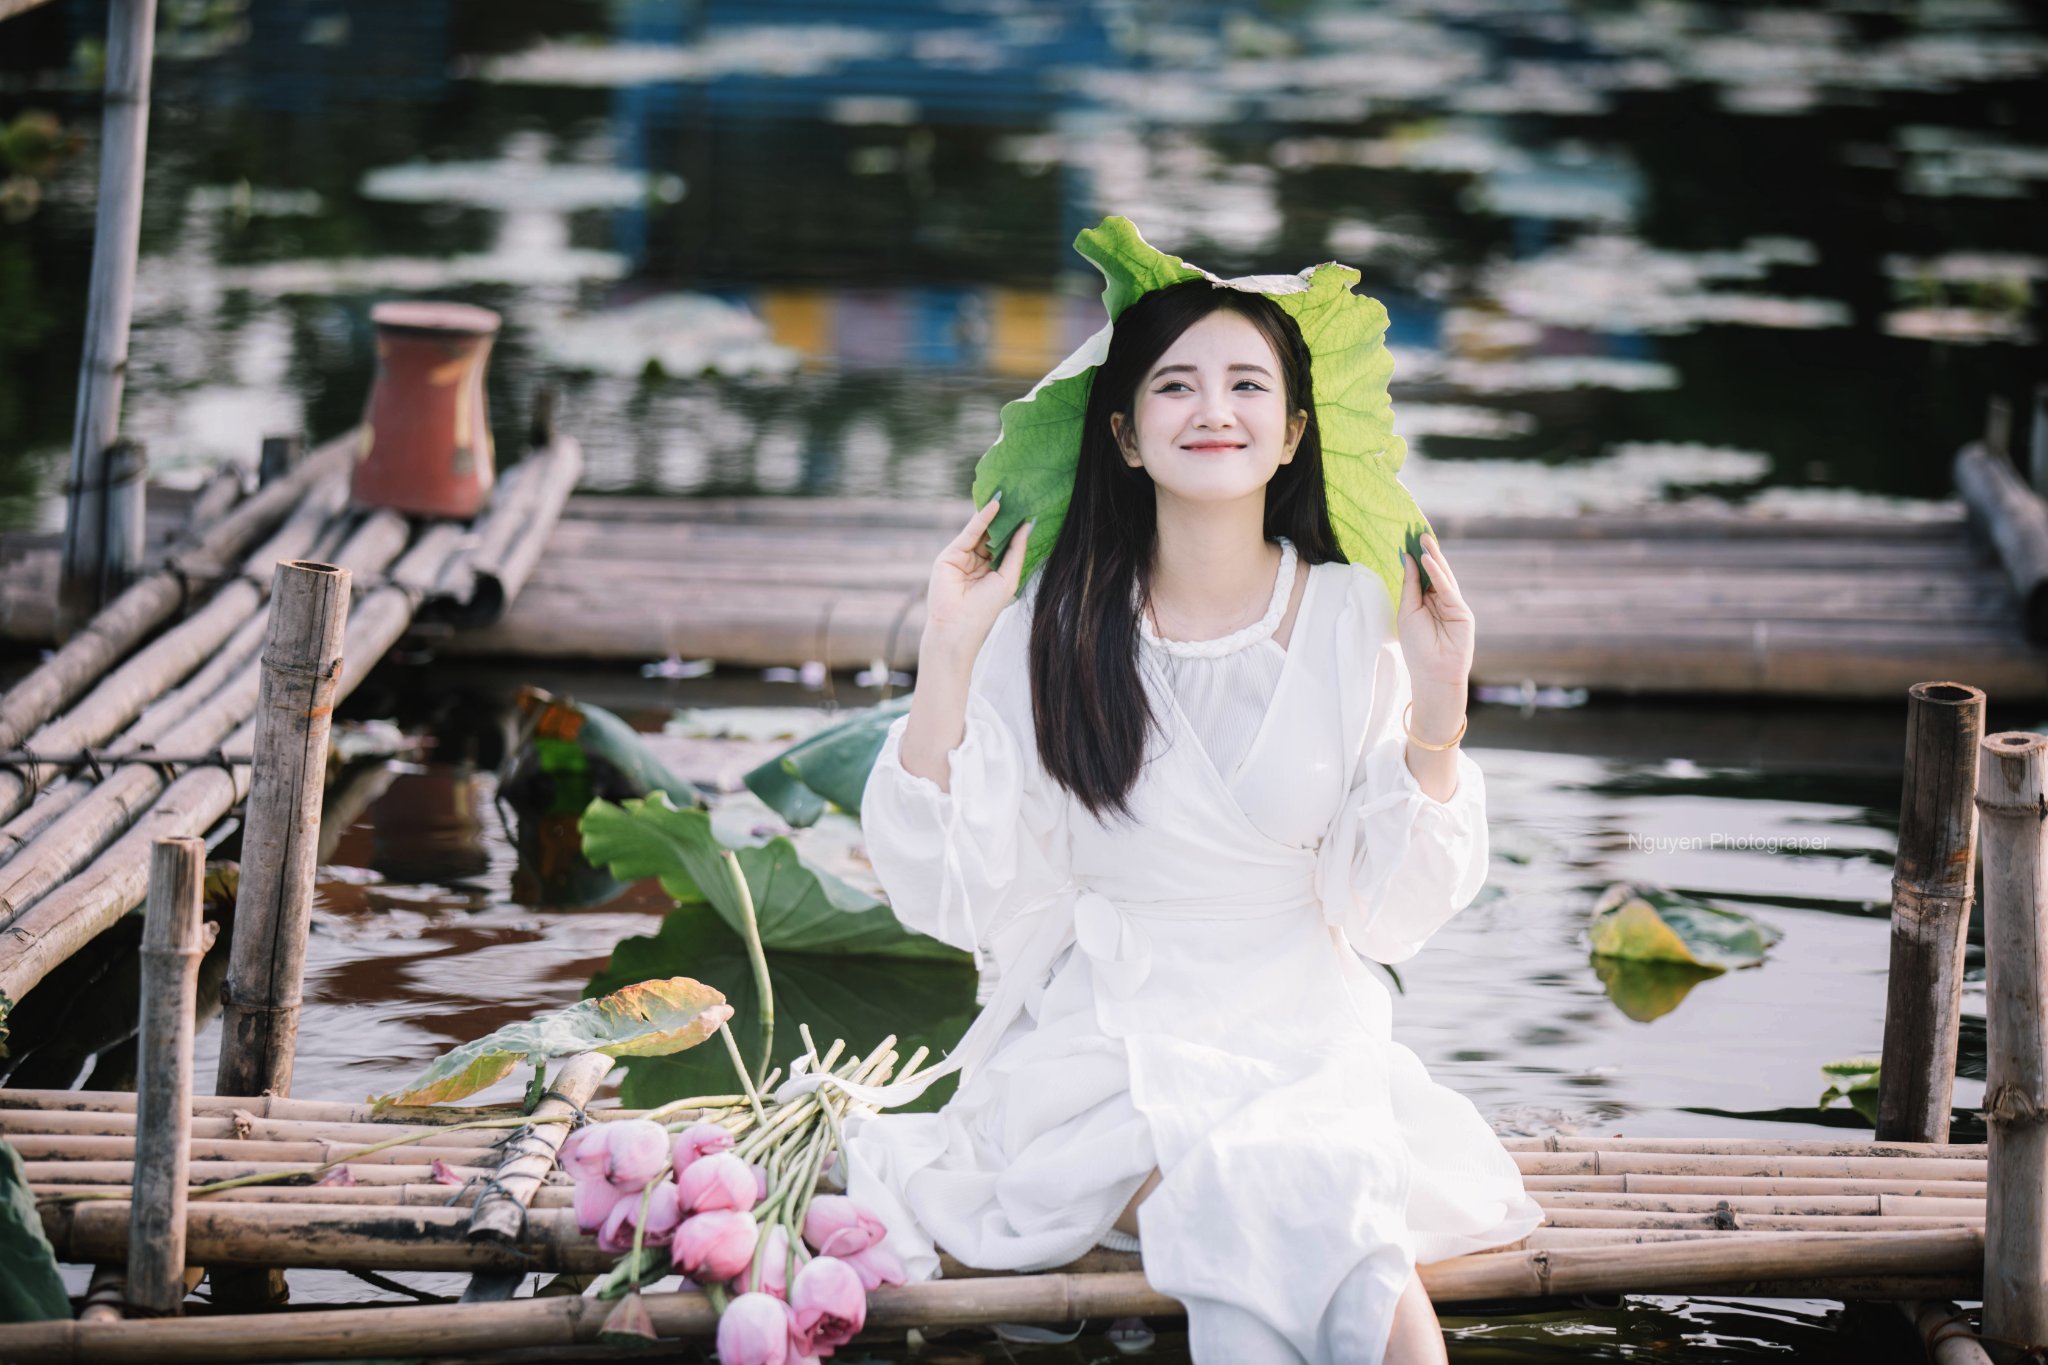 Đại học Hà Nội,hoa sen,cách chụp ảnh